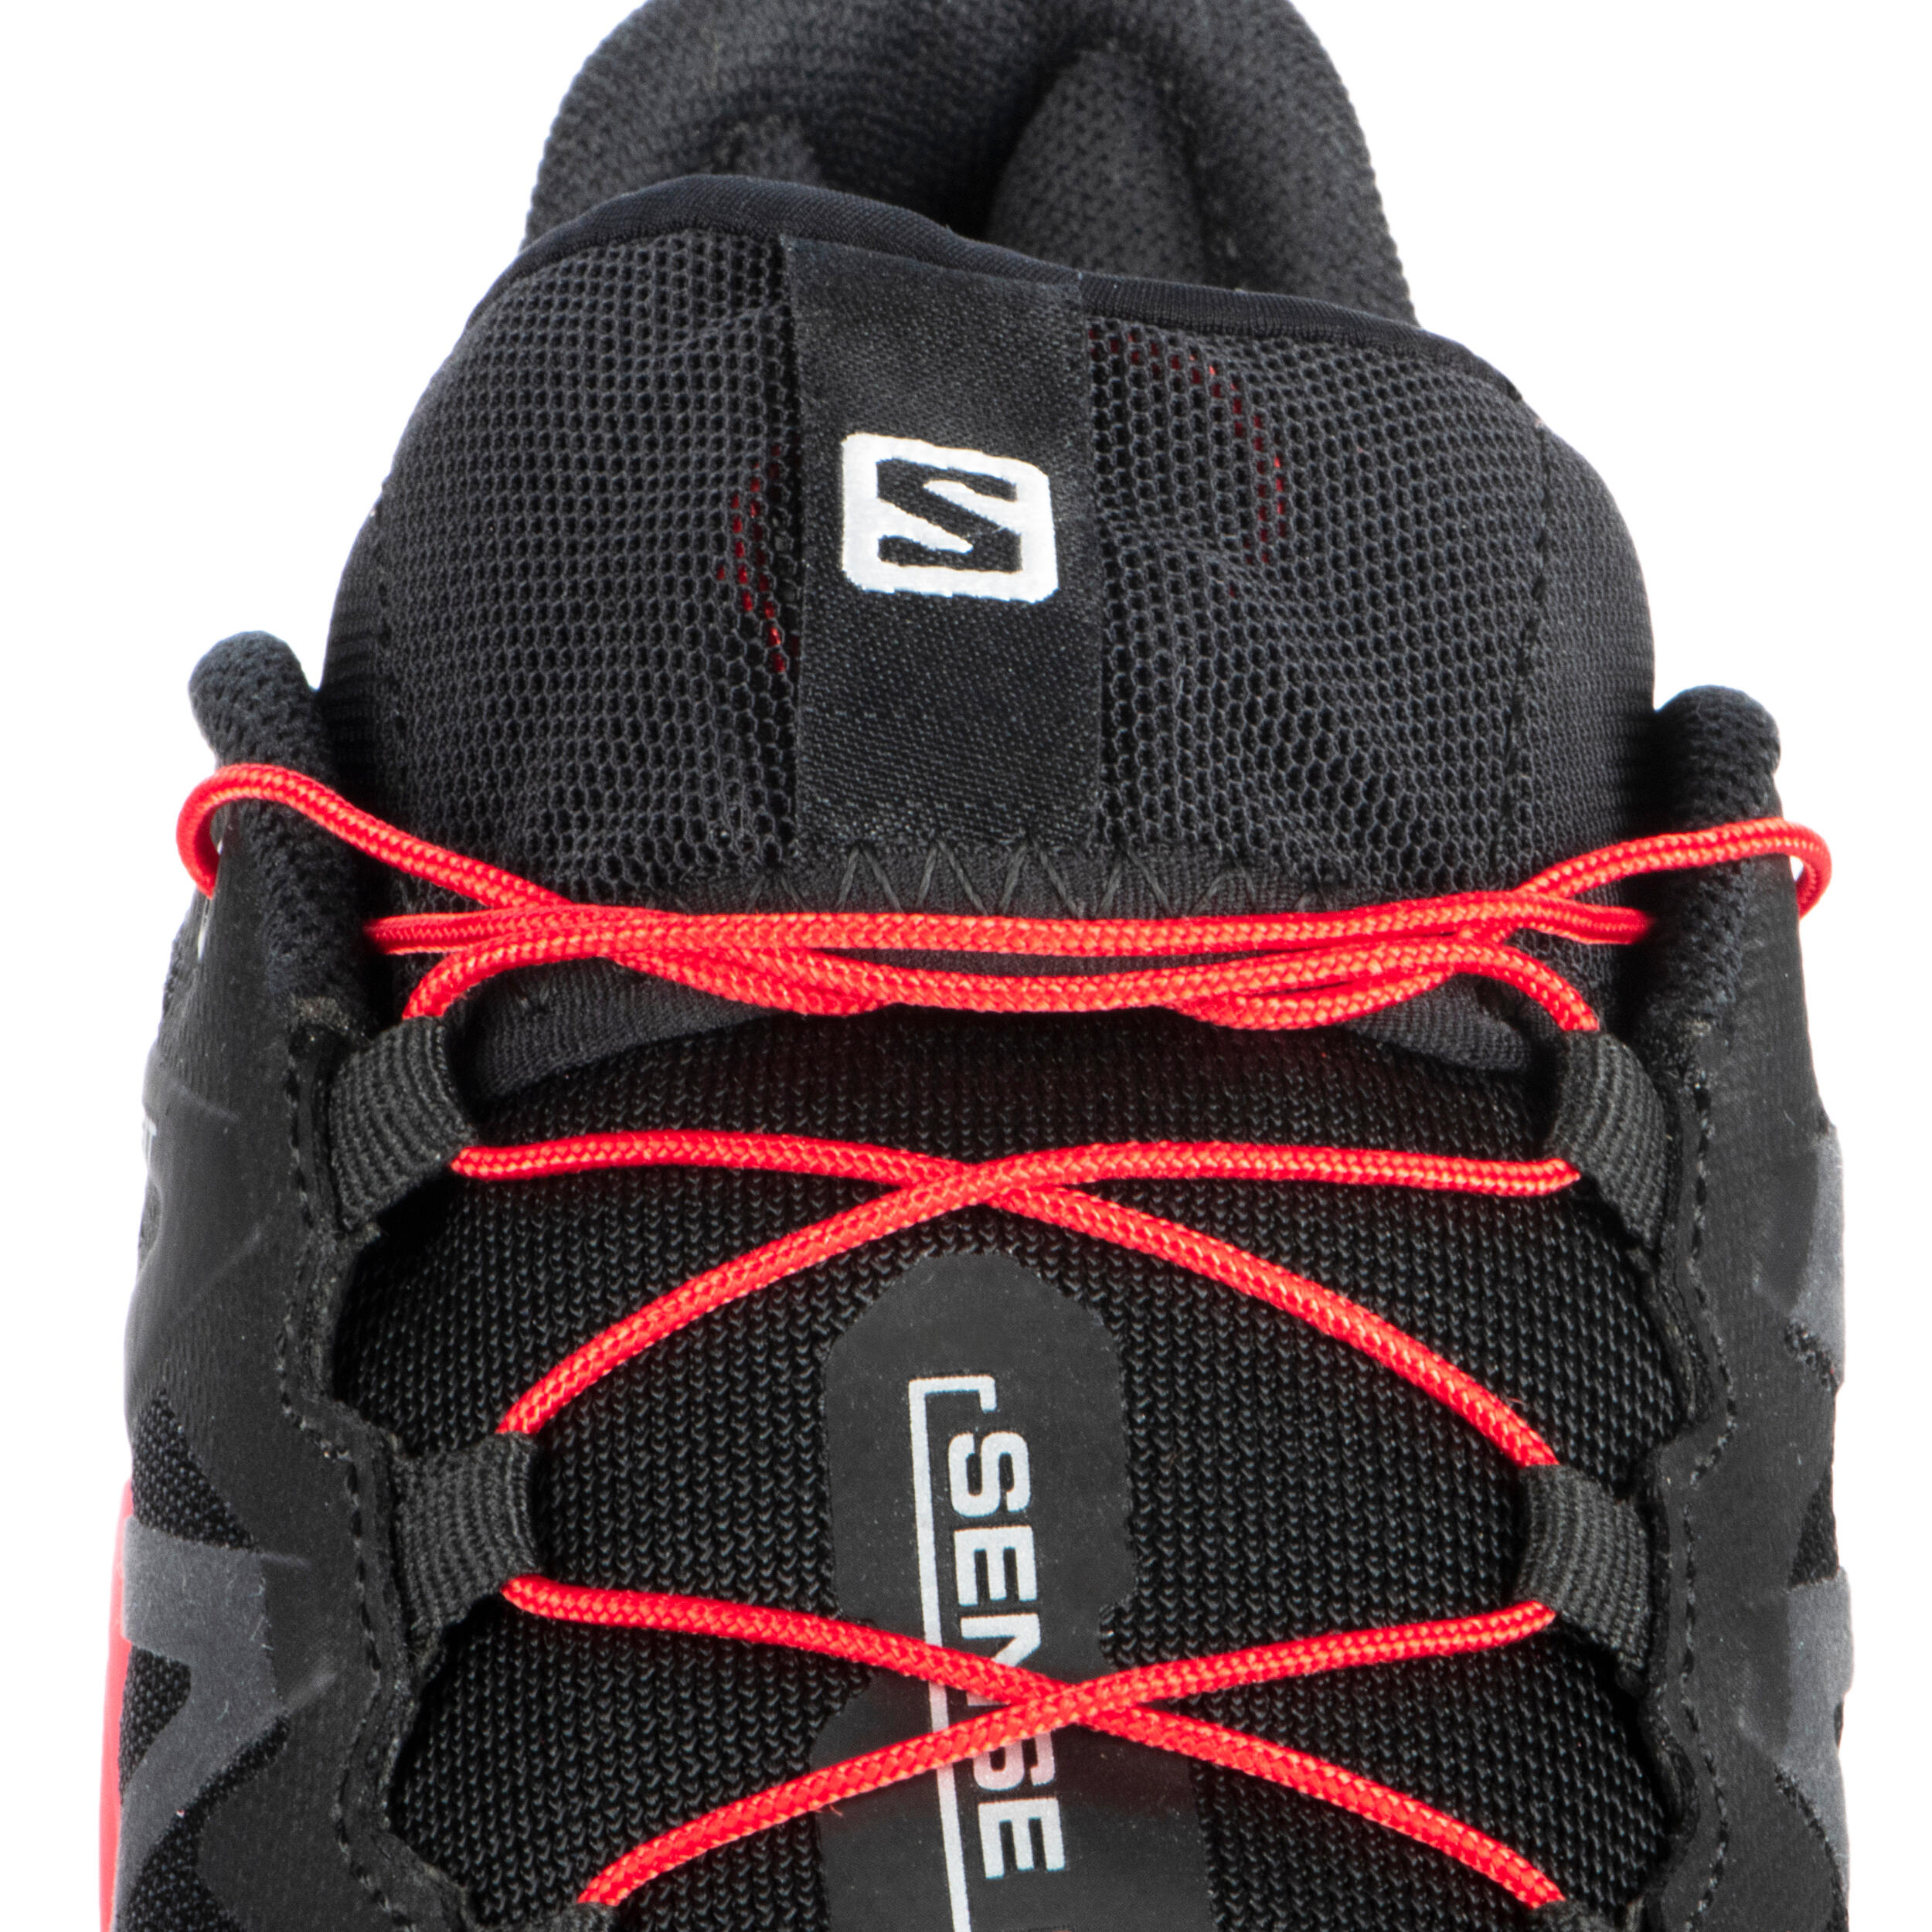 Trail Running Shoe Salomon Sense Ride 4 - black red 8/12